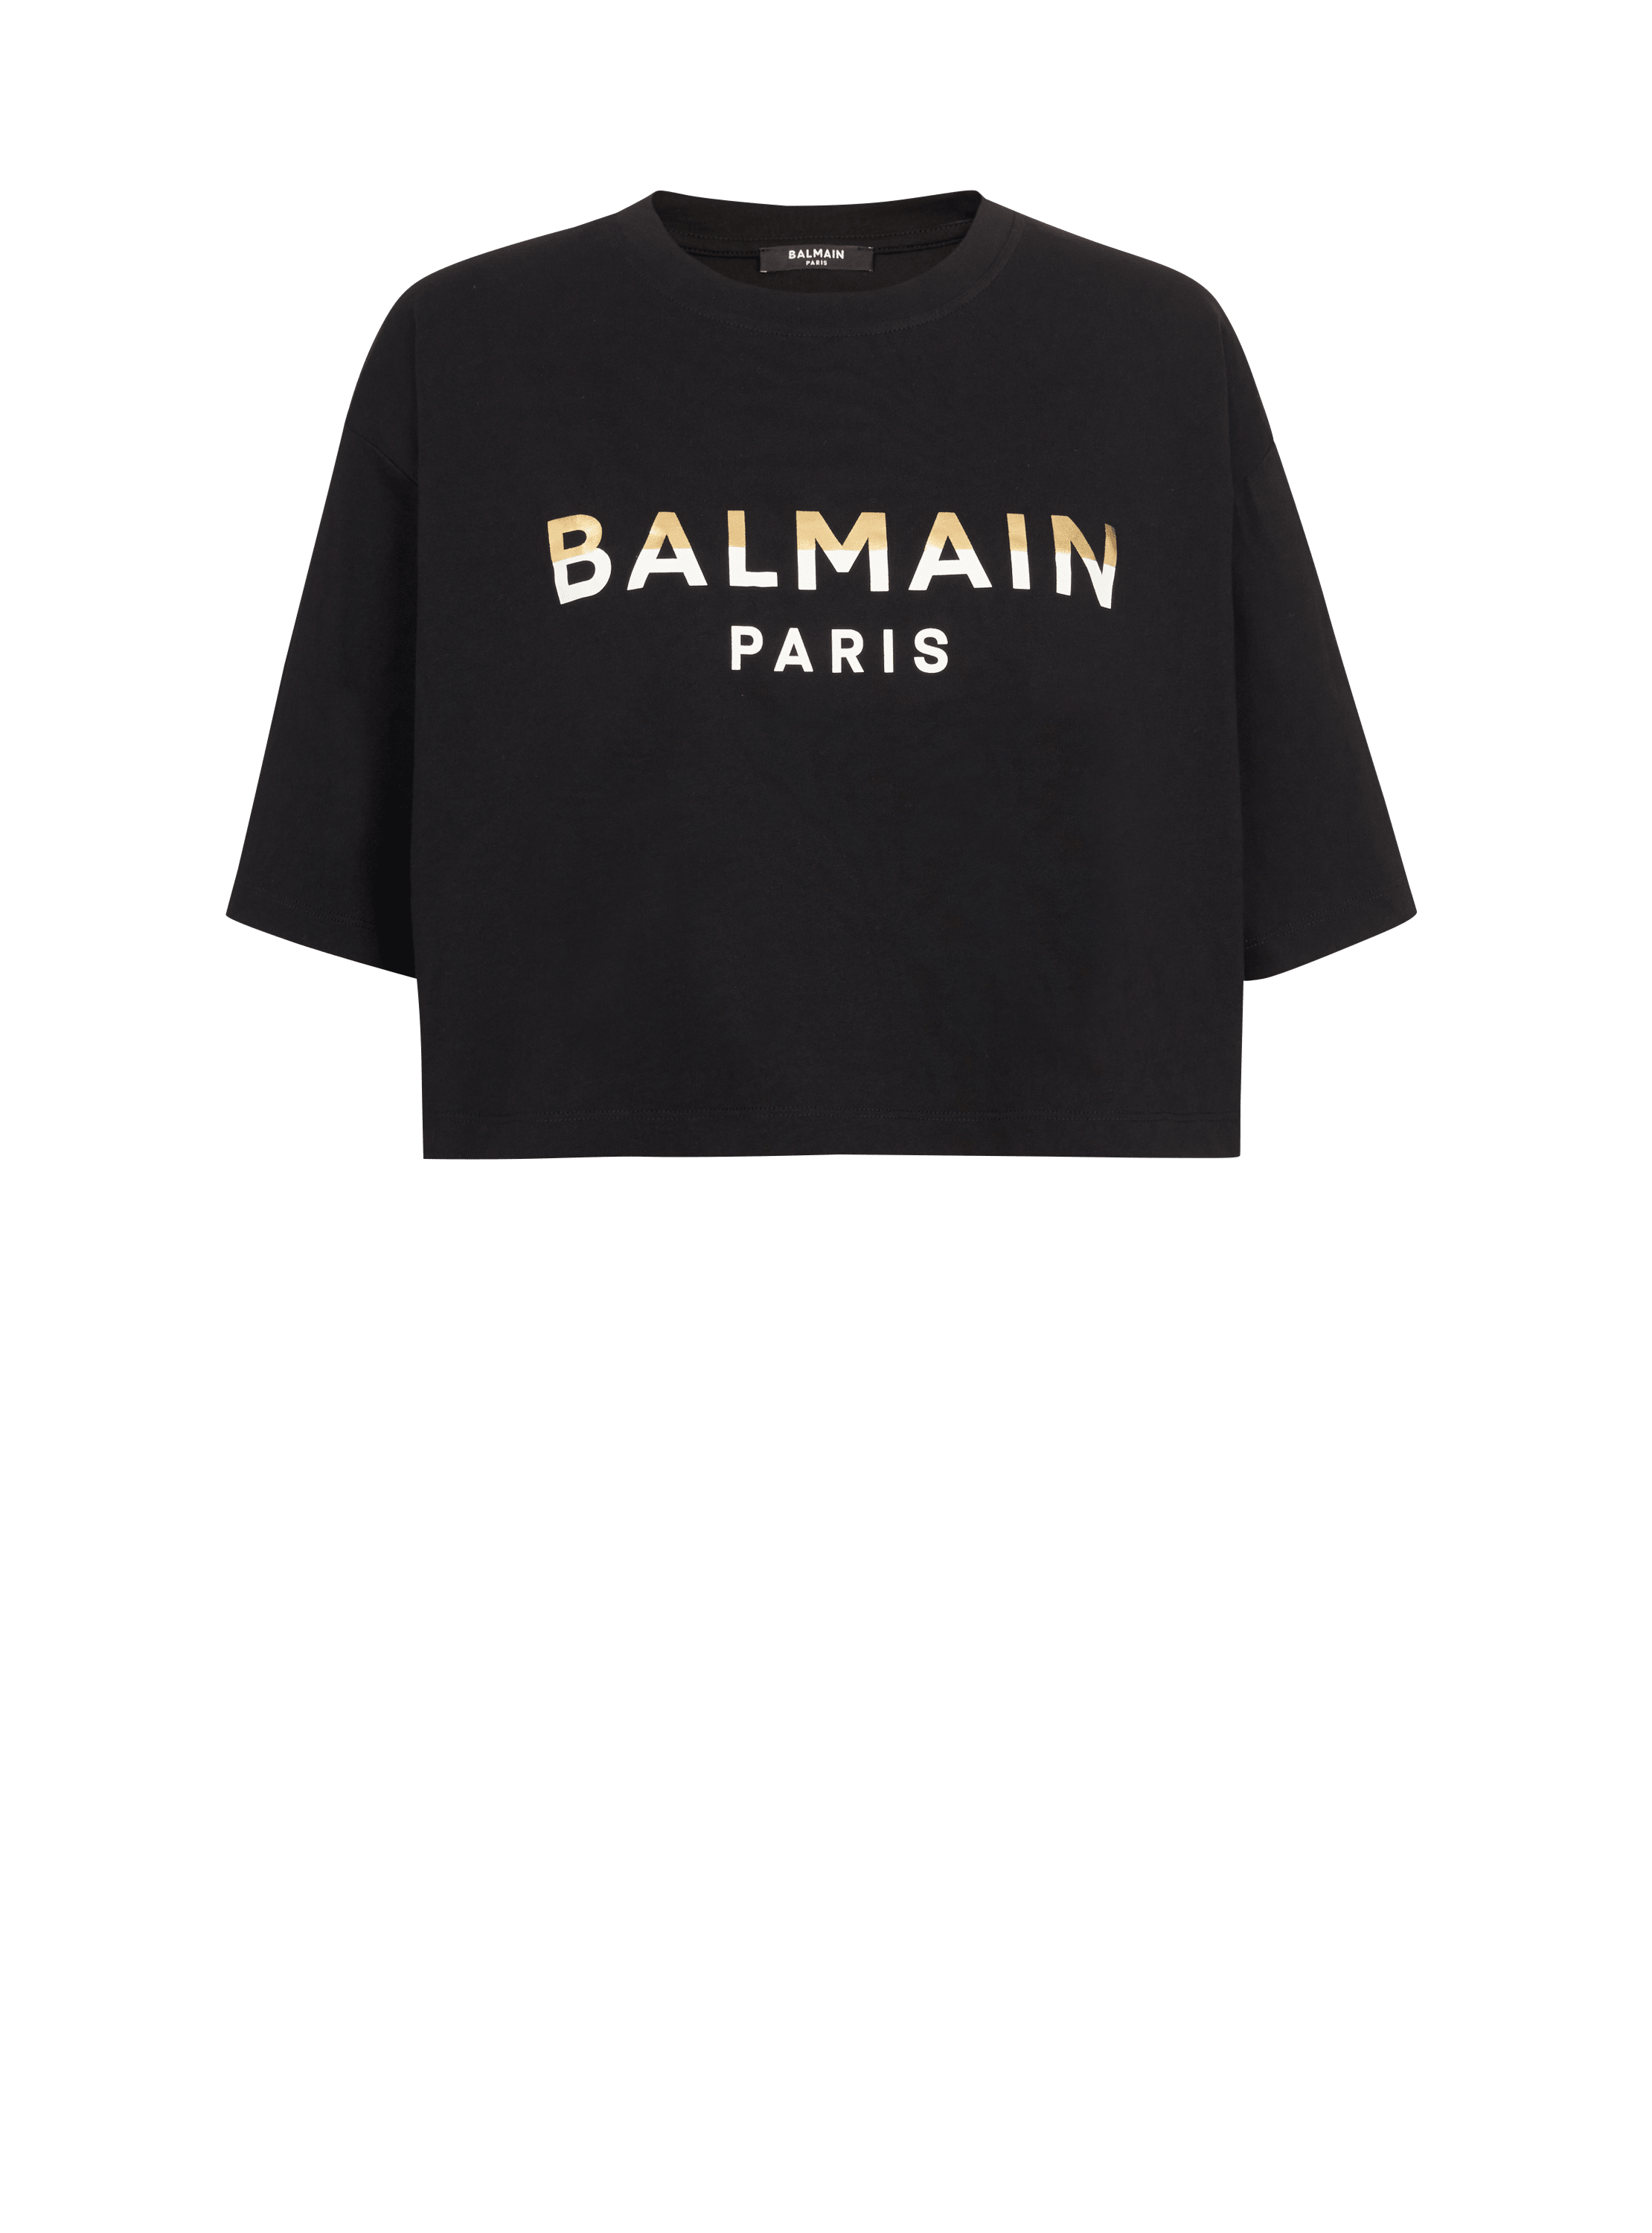 Balmain Paris T-Shirt schwarz - Damen | BALMAIN